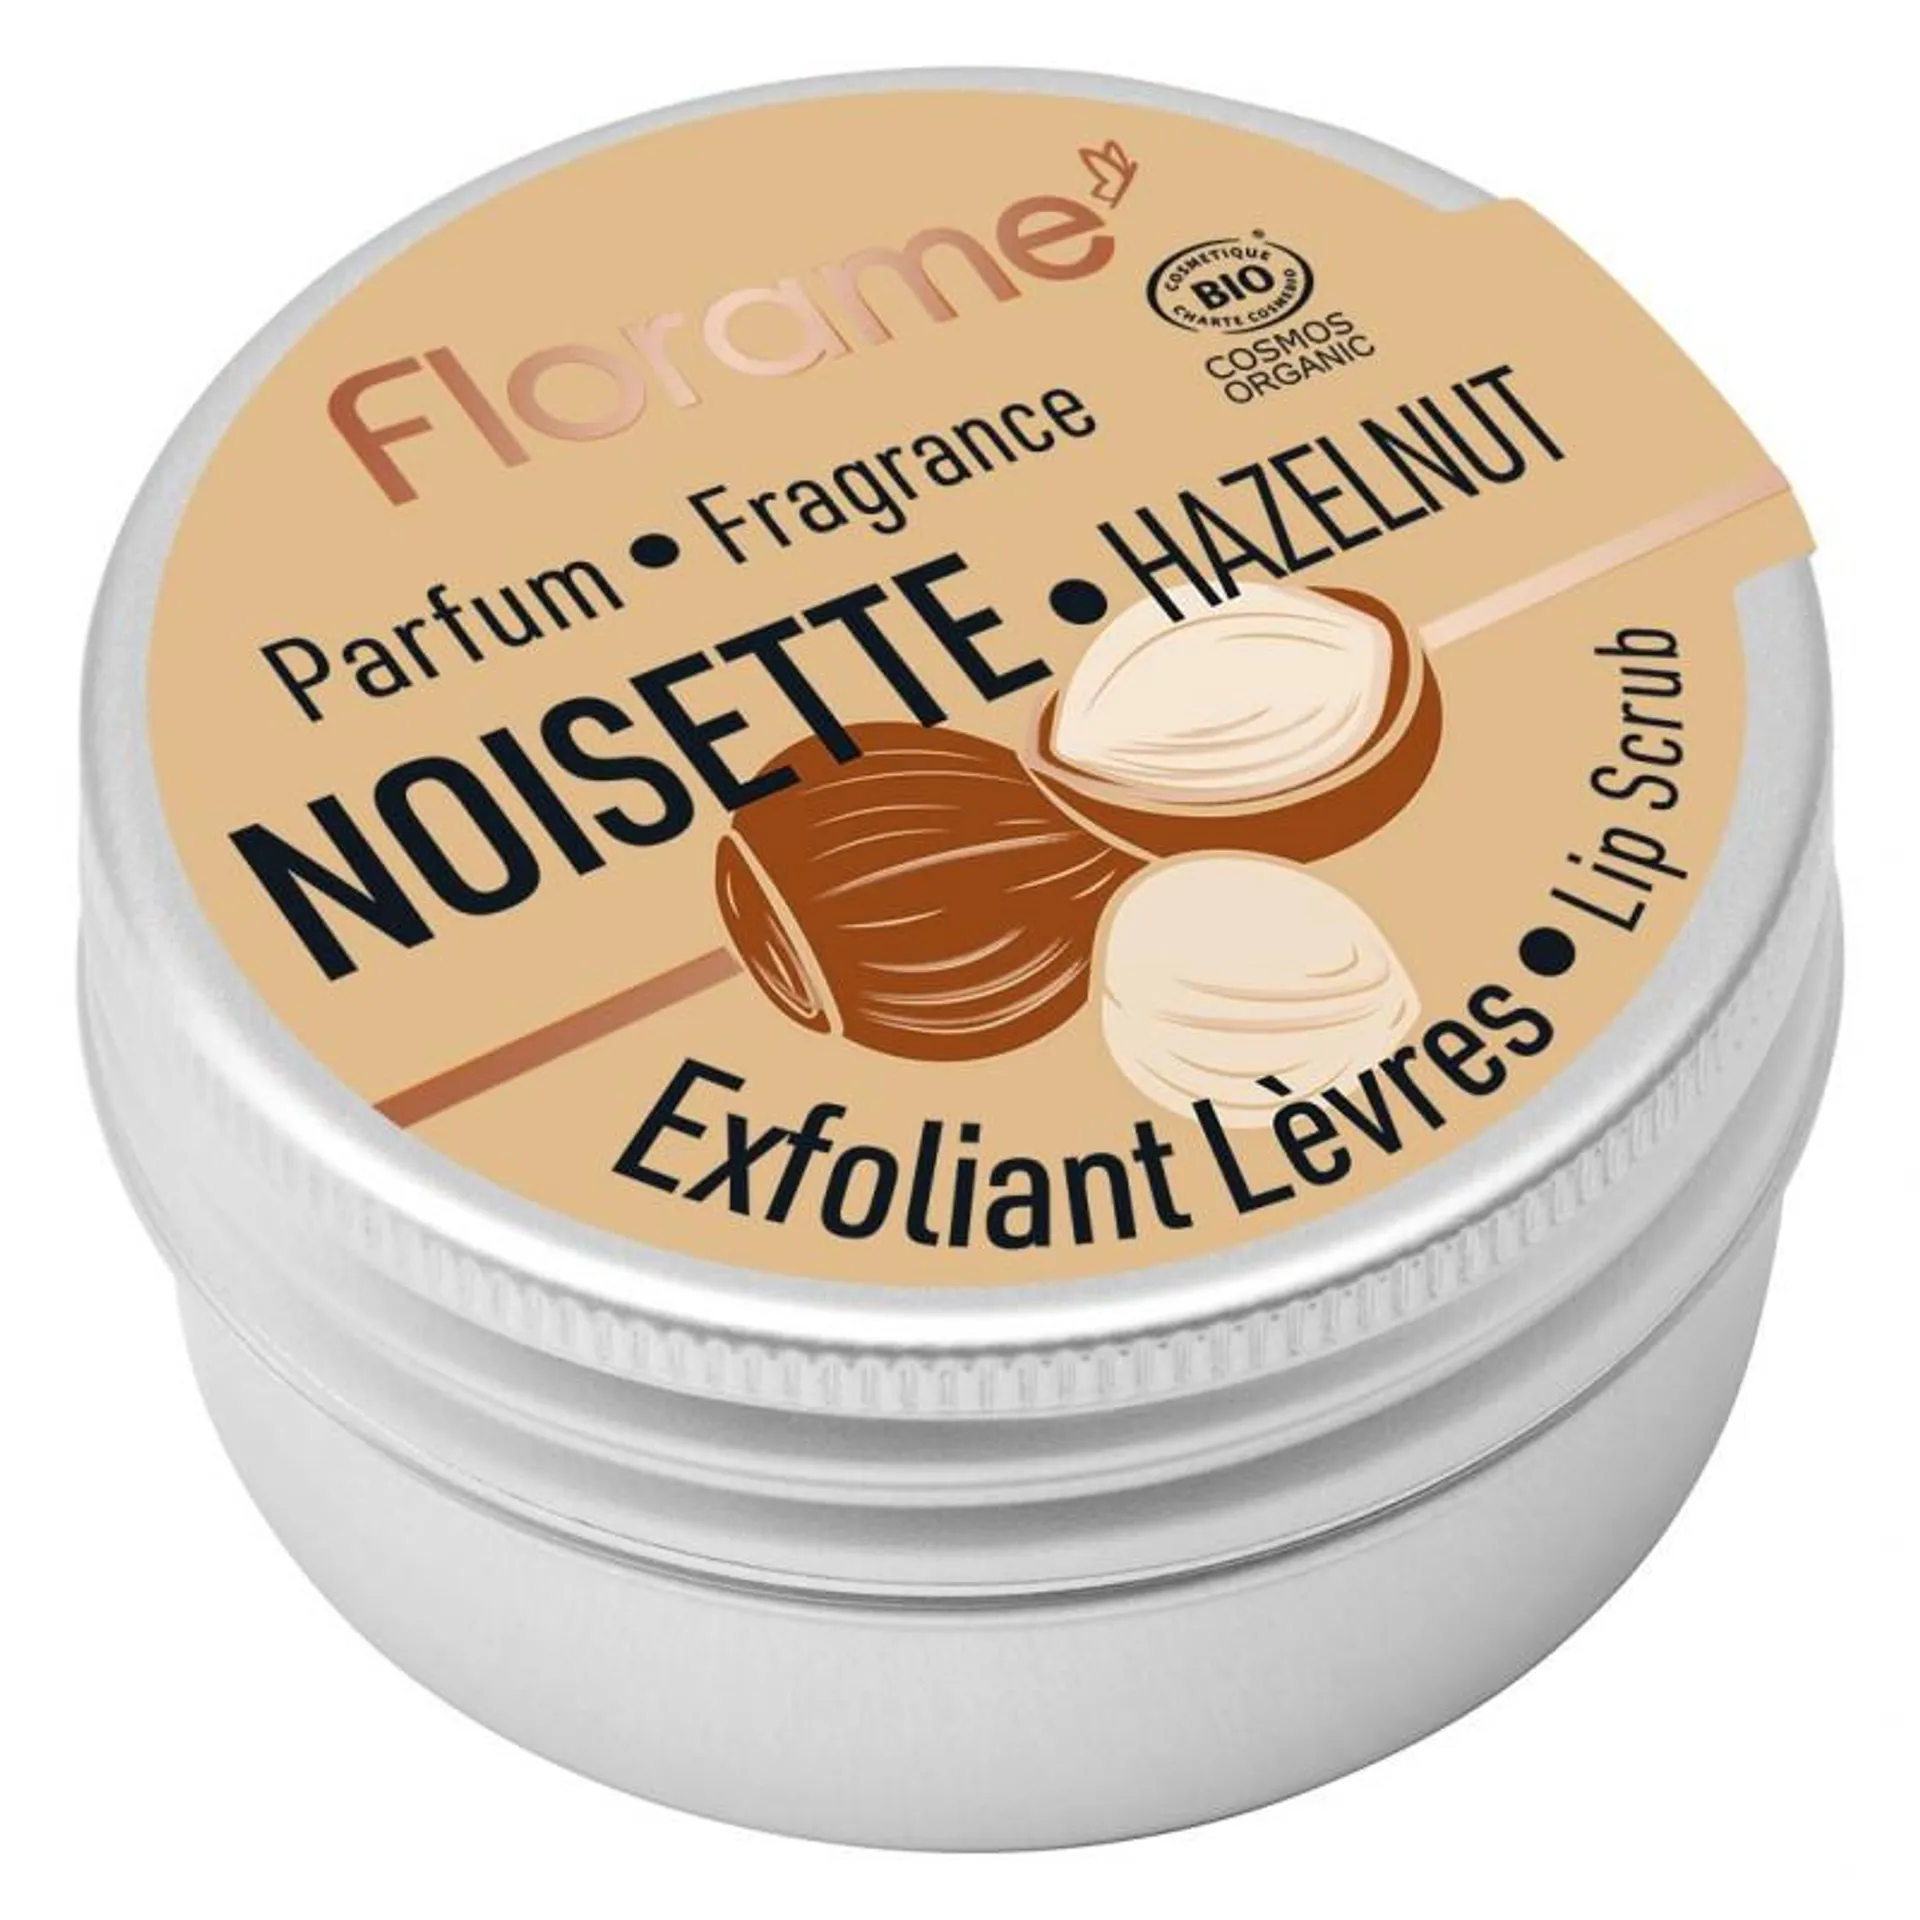 Exfoliant lèvres - Noisette